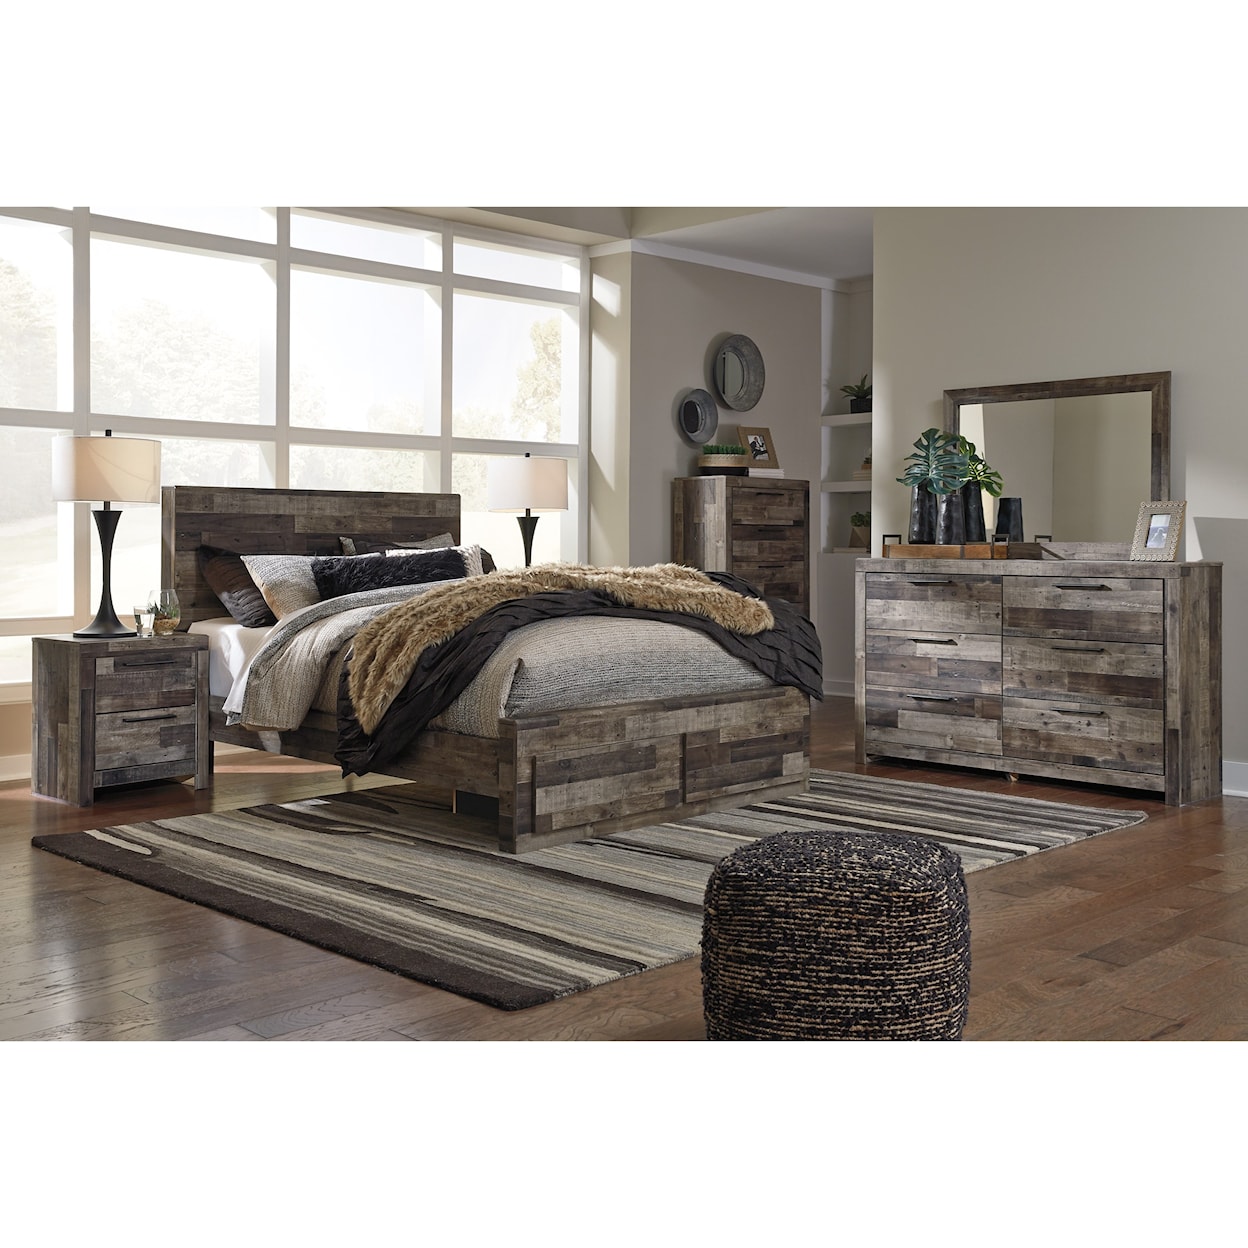 Ashley Furniture Benchcraft Derekson Queen Storage Bed